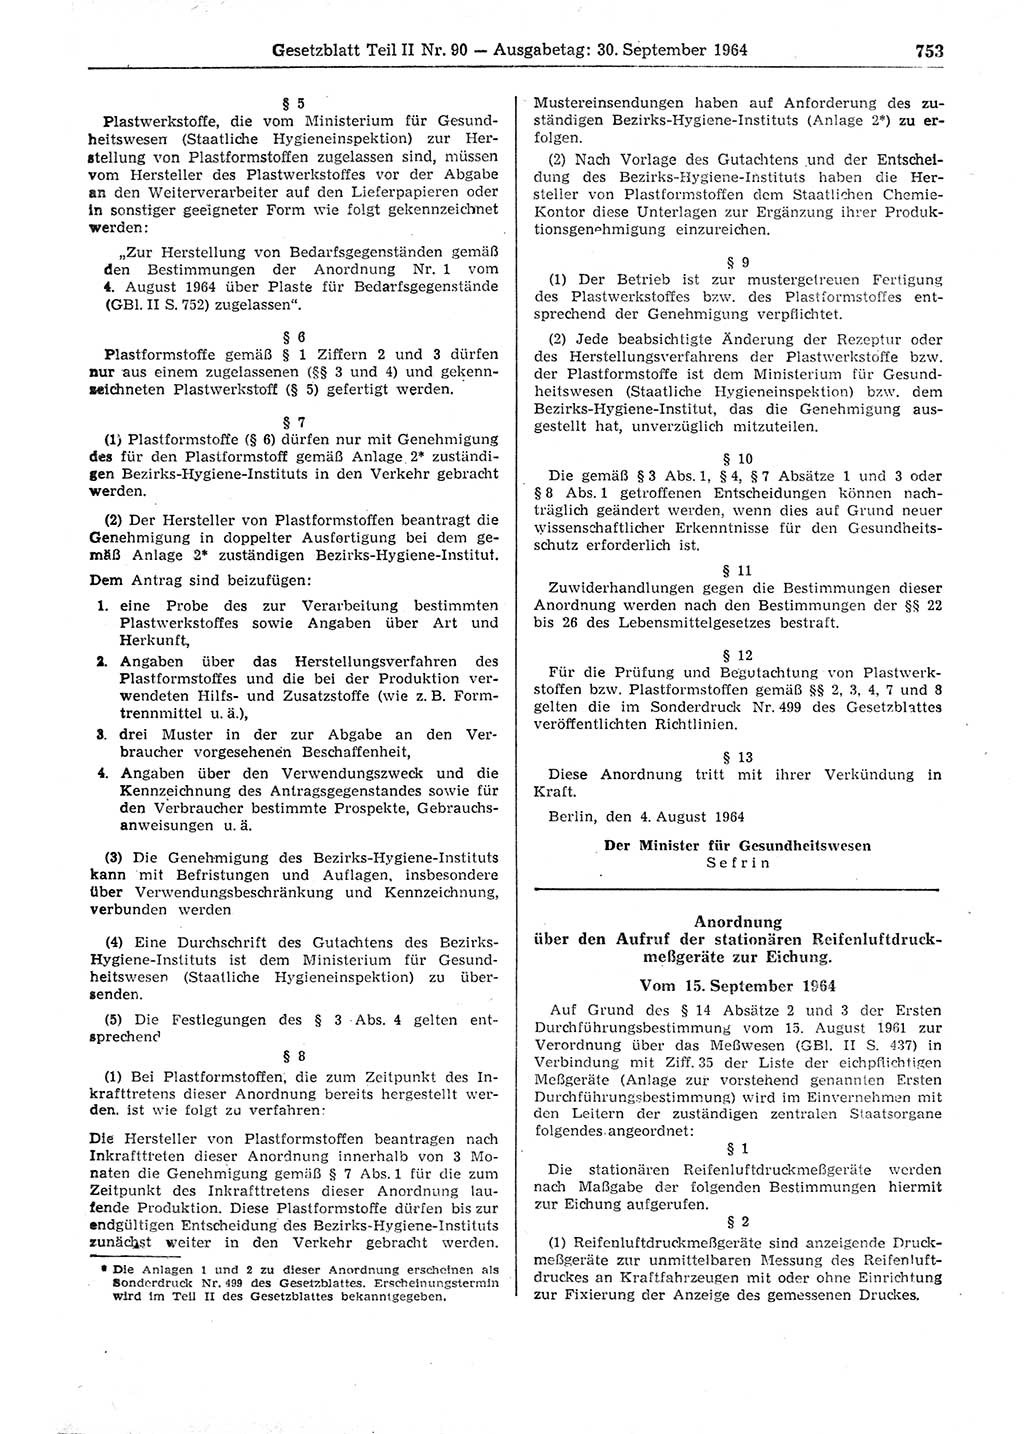 Gesetzblatt (GBl.) der Deutschen Demokratischen Republik (DDR) Teil ⅠⅠ 1964, Seite 753 (GBl. DDR ⅠⅠ 1964, S. 753)